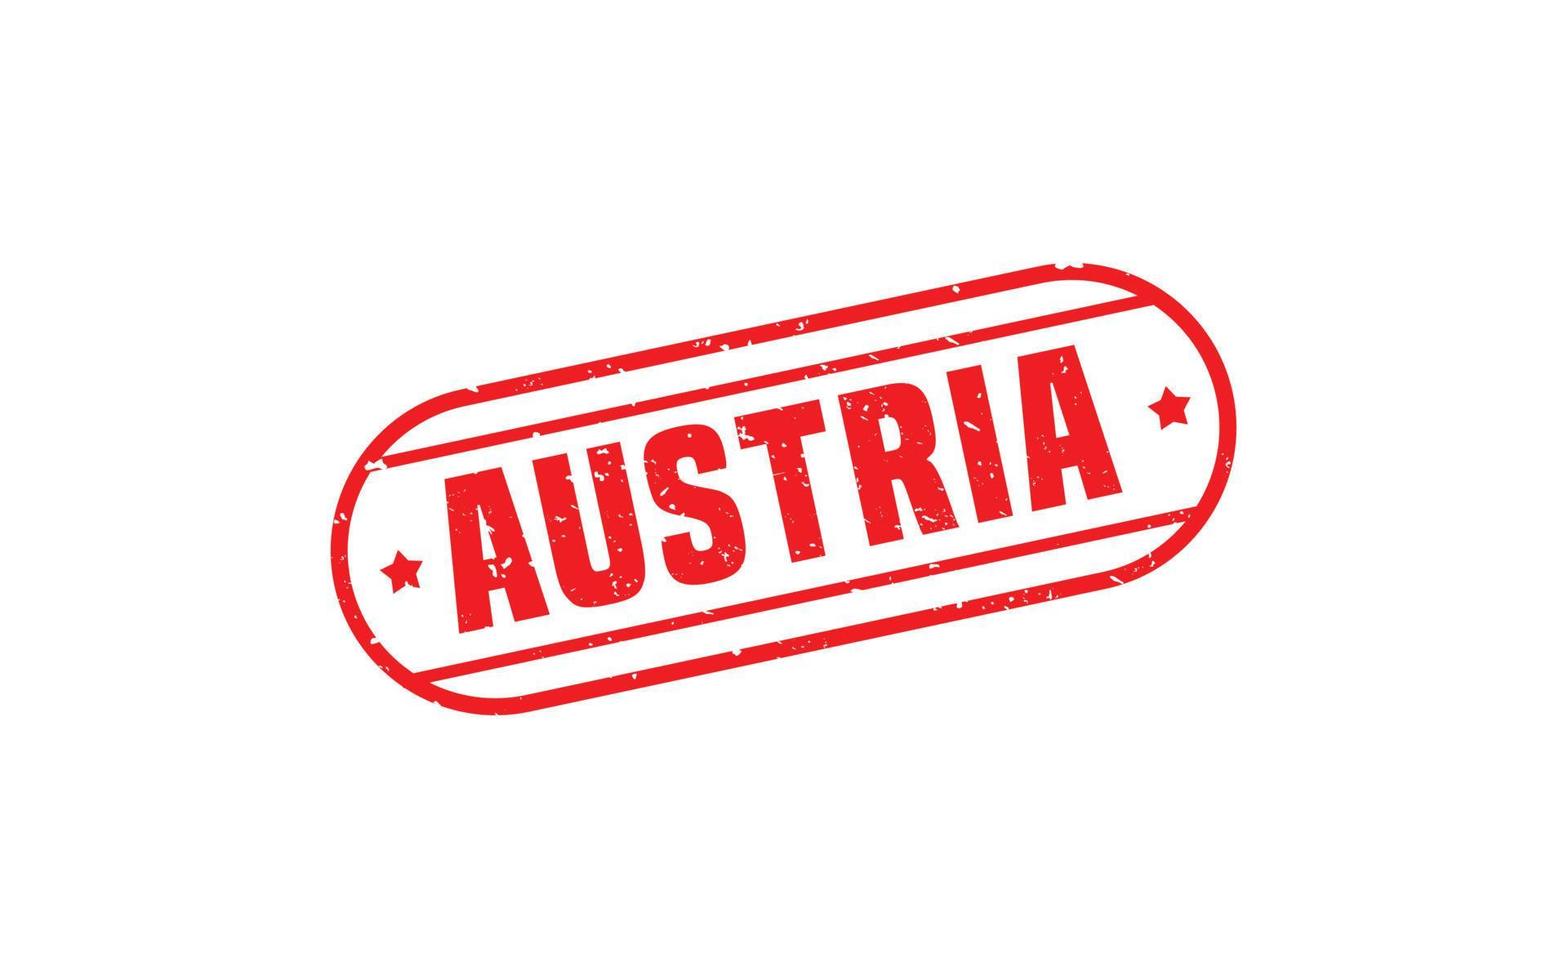 caucho de sello de austria con estilo grunge sobre fondo blanco vector